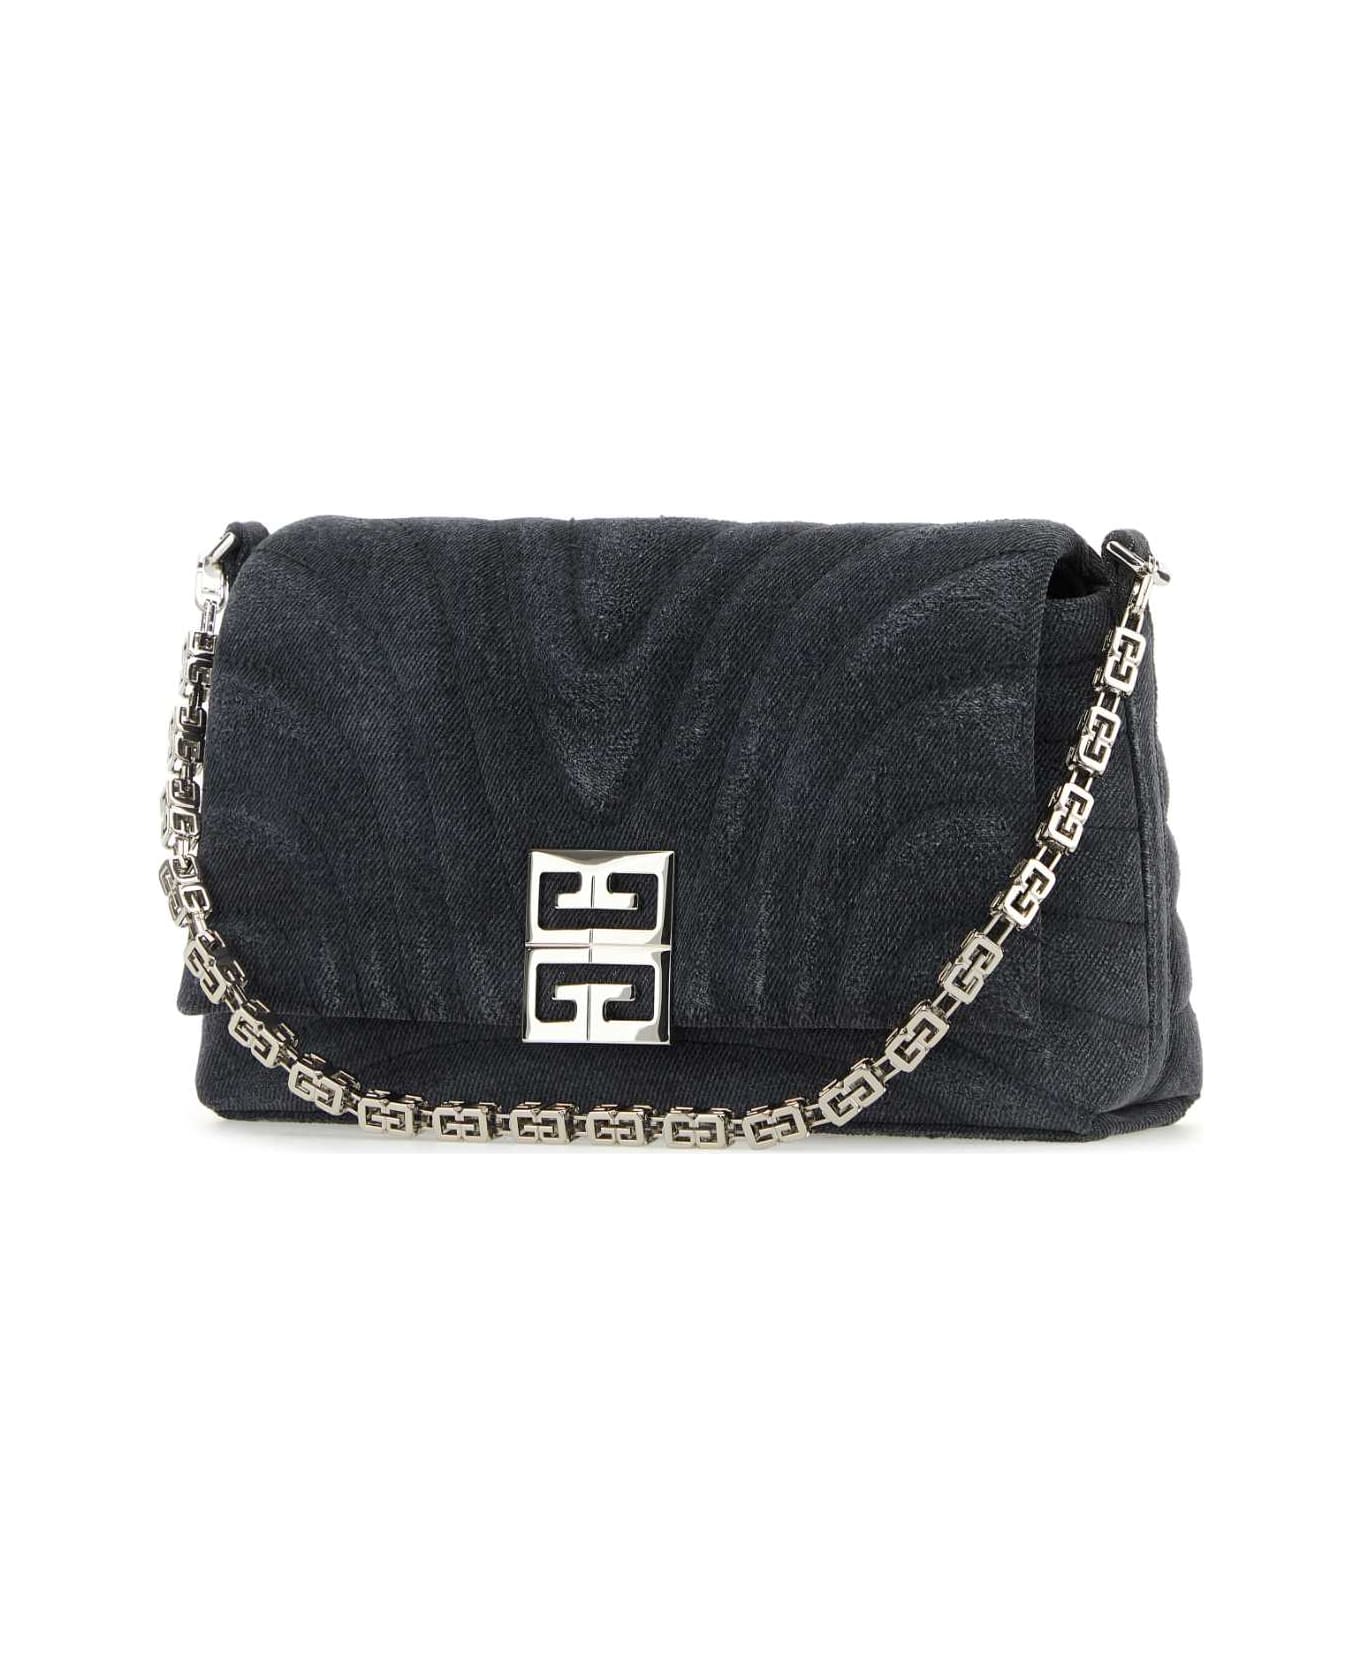 Givenchy Black Denim Medium 4g Soft Handbag - BLACK ショルダーバッグ